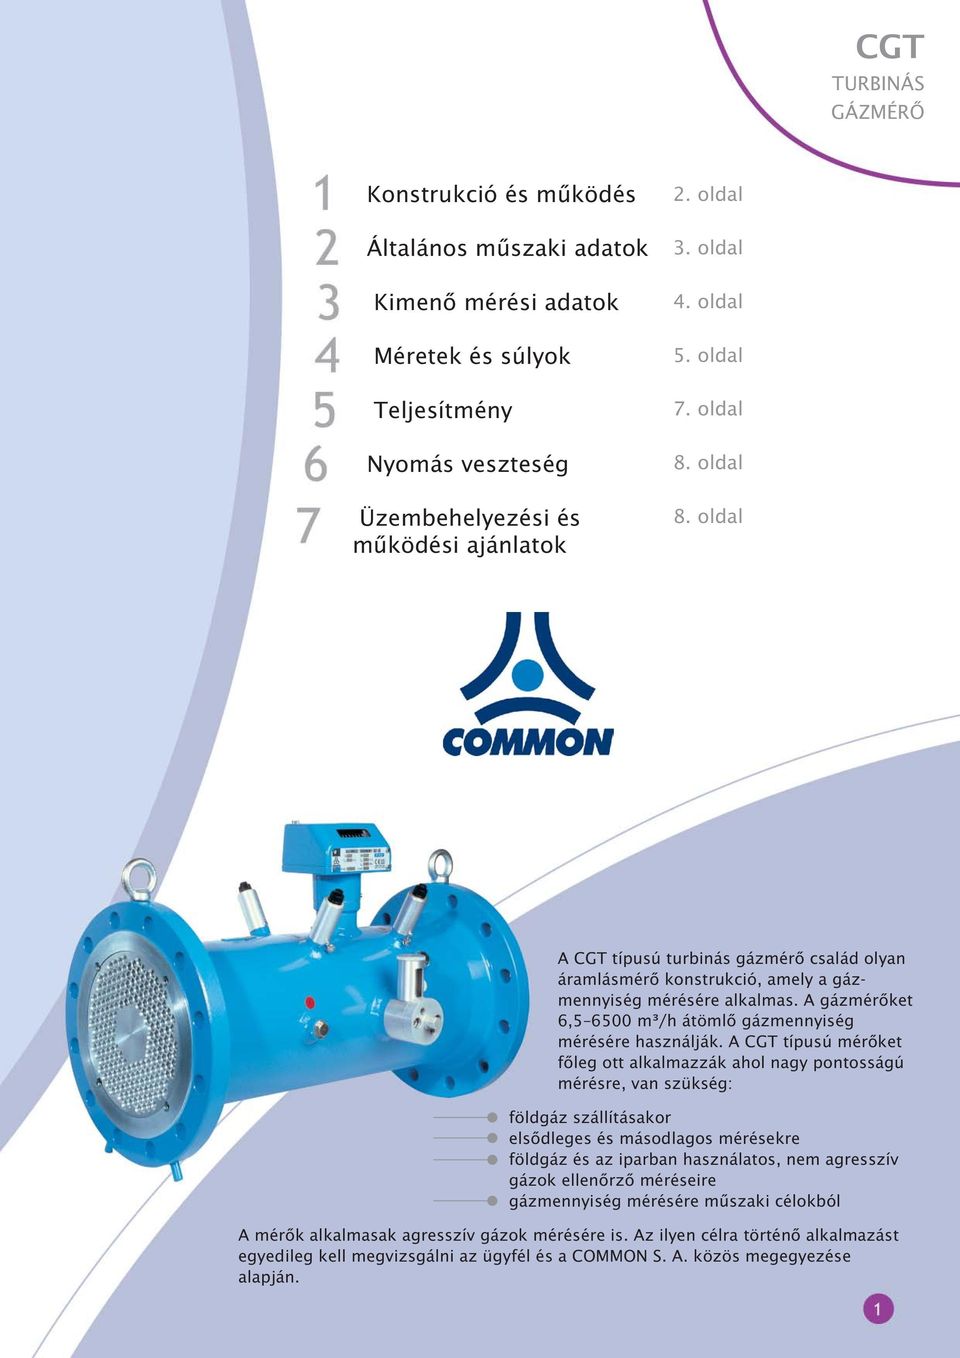 A gázmérõket 6,5 6500 m³/h átömlõ gázmennyiség mérésére használják.